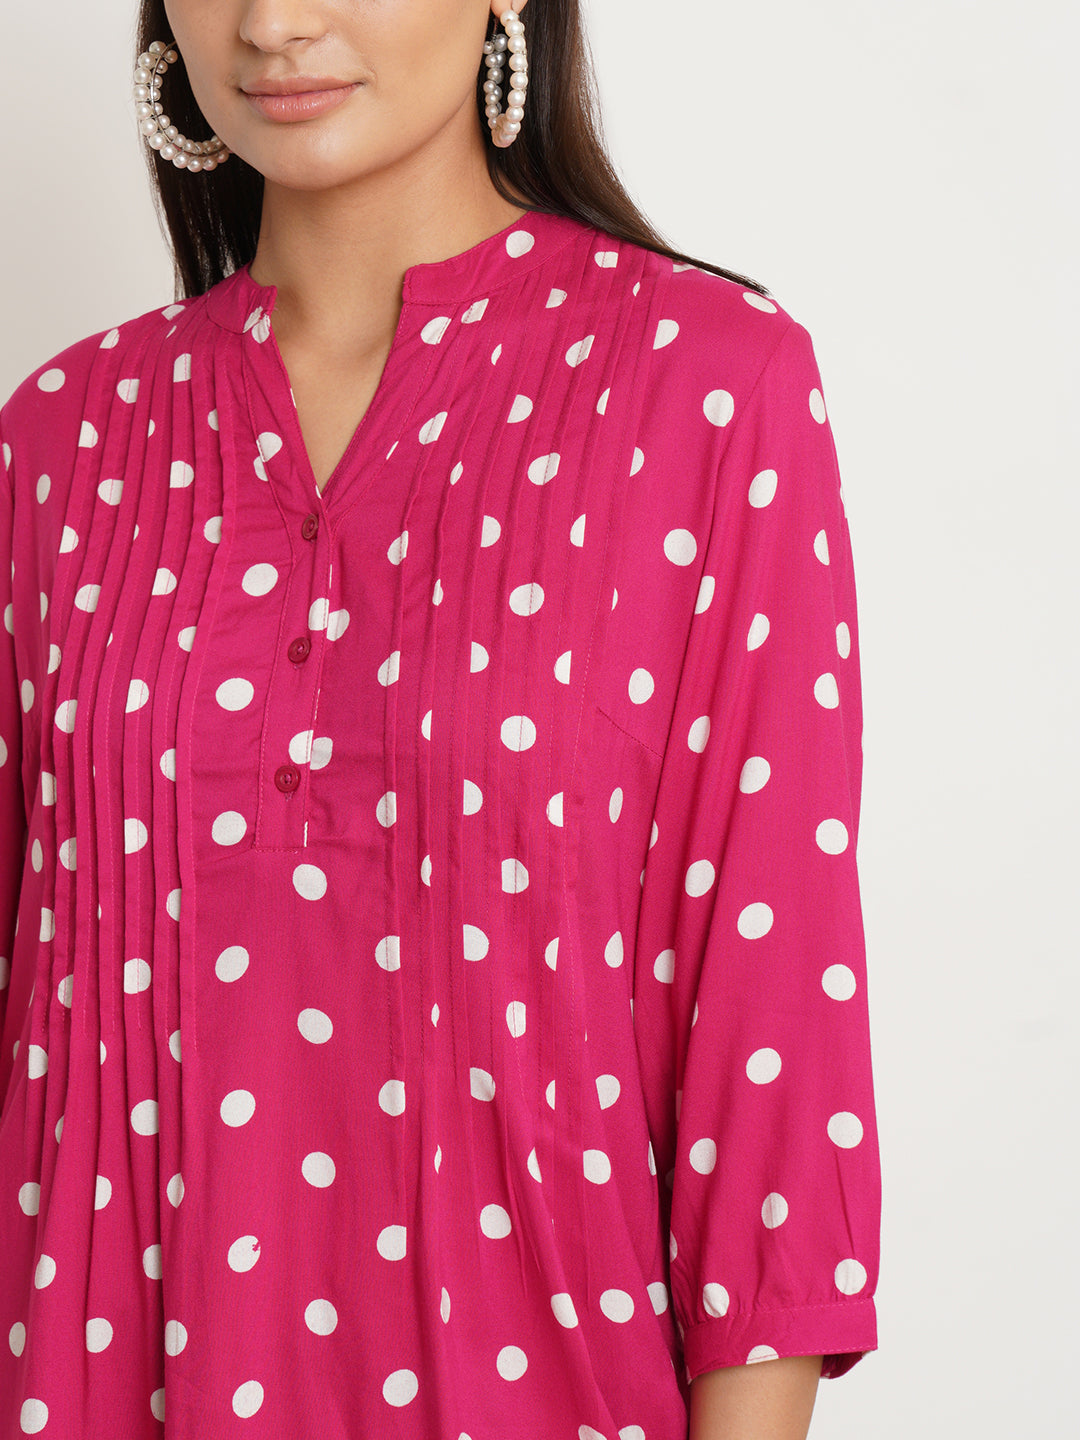 Women Red & White Polka Dot Print Plus Size Top